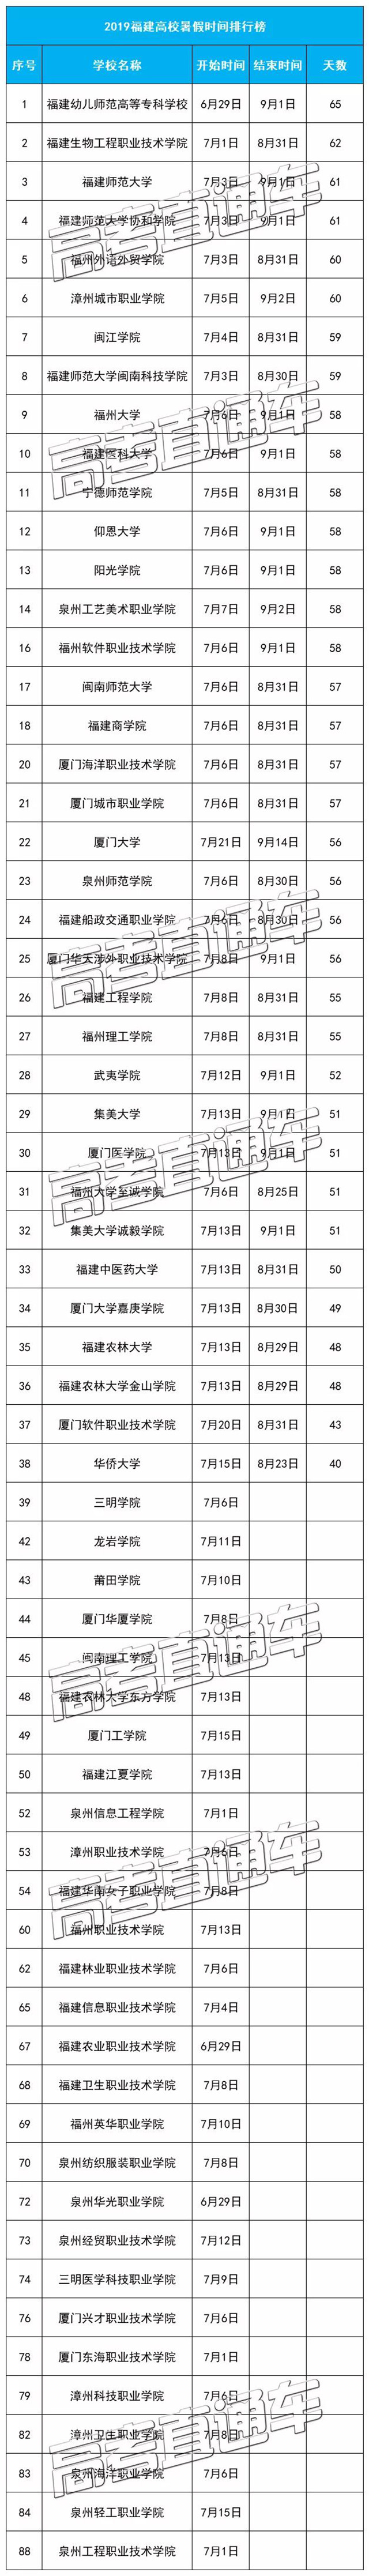 2019福建高校暑假放假时间表:真香,排行第一足足多了1个月